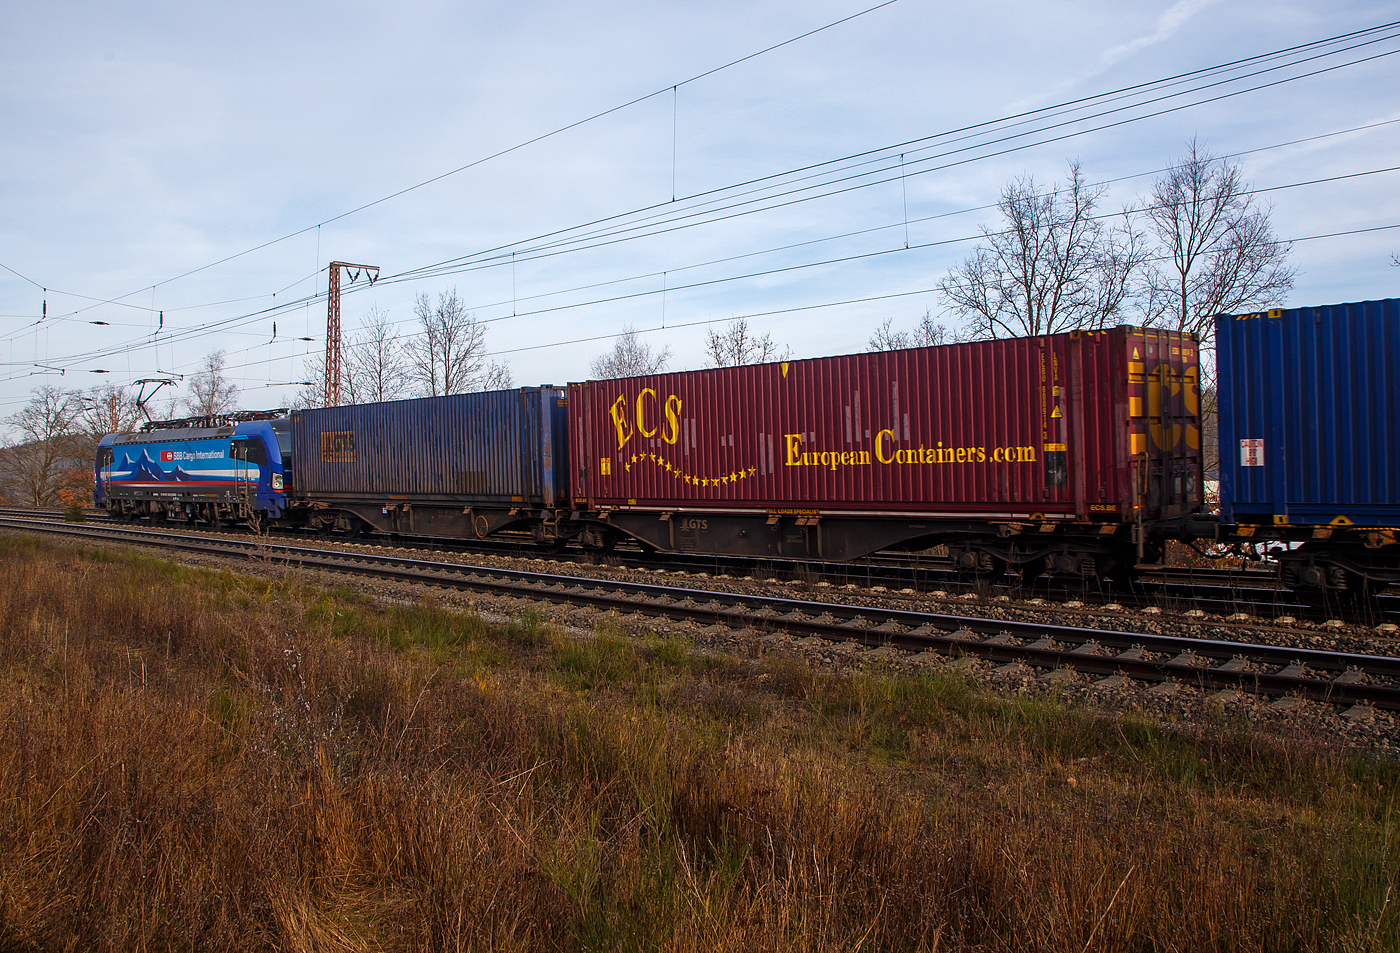 Hinter der an die SBB Cargo International AG vermietete SIEMENS Vectron MS 193 530  Po , der sechsachsige Drehgestell-Gelenk-Containertragwagen-Einheit (6-achsiger Containertragwagen), 3 54 4962 273-7 CZ-GTSL der Gattung Sggmrss, der italienischen GTS Logistic (Bari), am 22.02.2023 im Zugverband bei der Zugdurchfahrt in Wilnsdorf-Rudersdorf (Kr. Siegen), hier beladen mit zwei Containern.

TECHNISCHE DATEN:
Spurweite: 1.435 mm
Anzahl der Achsen: 6 in drei Drehgestellen
Länge über Puffer: 29.590 mm
Drehzapfenabstand: 2 x 11.995 mm
Achsabstand im Drehgestell: 1.800mm
Laufraddurchmesser: 920 mm (neu)
Ladelänge : 2 x 13.820mm (2 x 45 ft)
Höhe der Ladeebene über SOK: 1.155 mm
Eigengewicht: ca. 28.000 kg
Max. Zuladung bei Lastgrenze S: 107,0 t (ab Streckenklasse D)
Max. Zuladung bei Lastgrenze SS: 92,0 t (ab Streckenklasse C)
Max. Geschwindigkeit: 100 km/h (Lastgrenze SS oder leer 120 km/h)
Kleinster bef. Gleisbogenradius: R 75 m
Verwendungsfähigkeit: TEN-GE